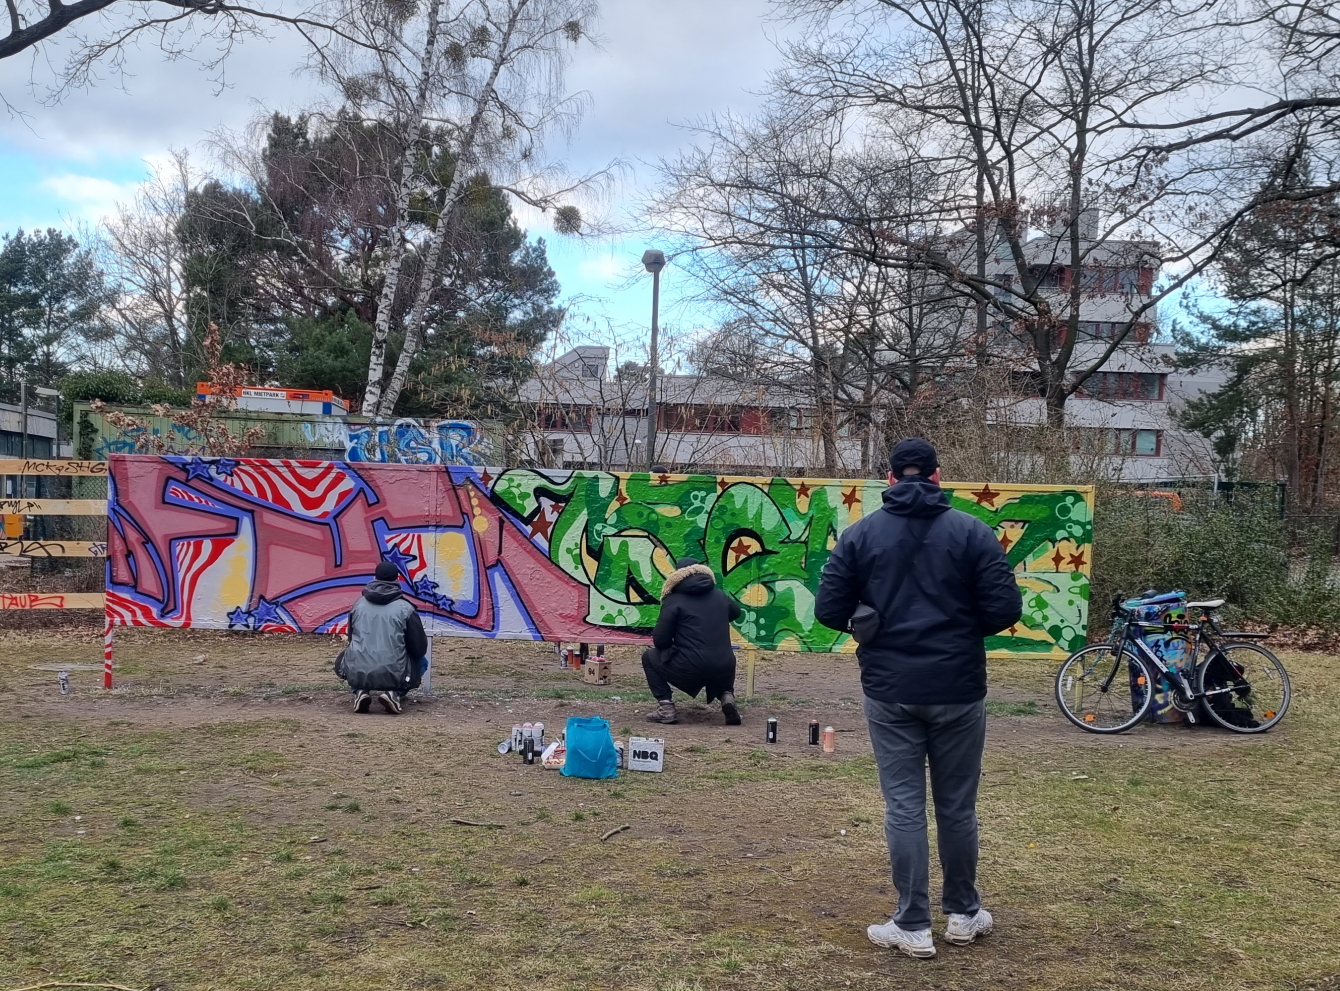 Jugendliche beim Sprayen an einer Graffiti-Wandd